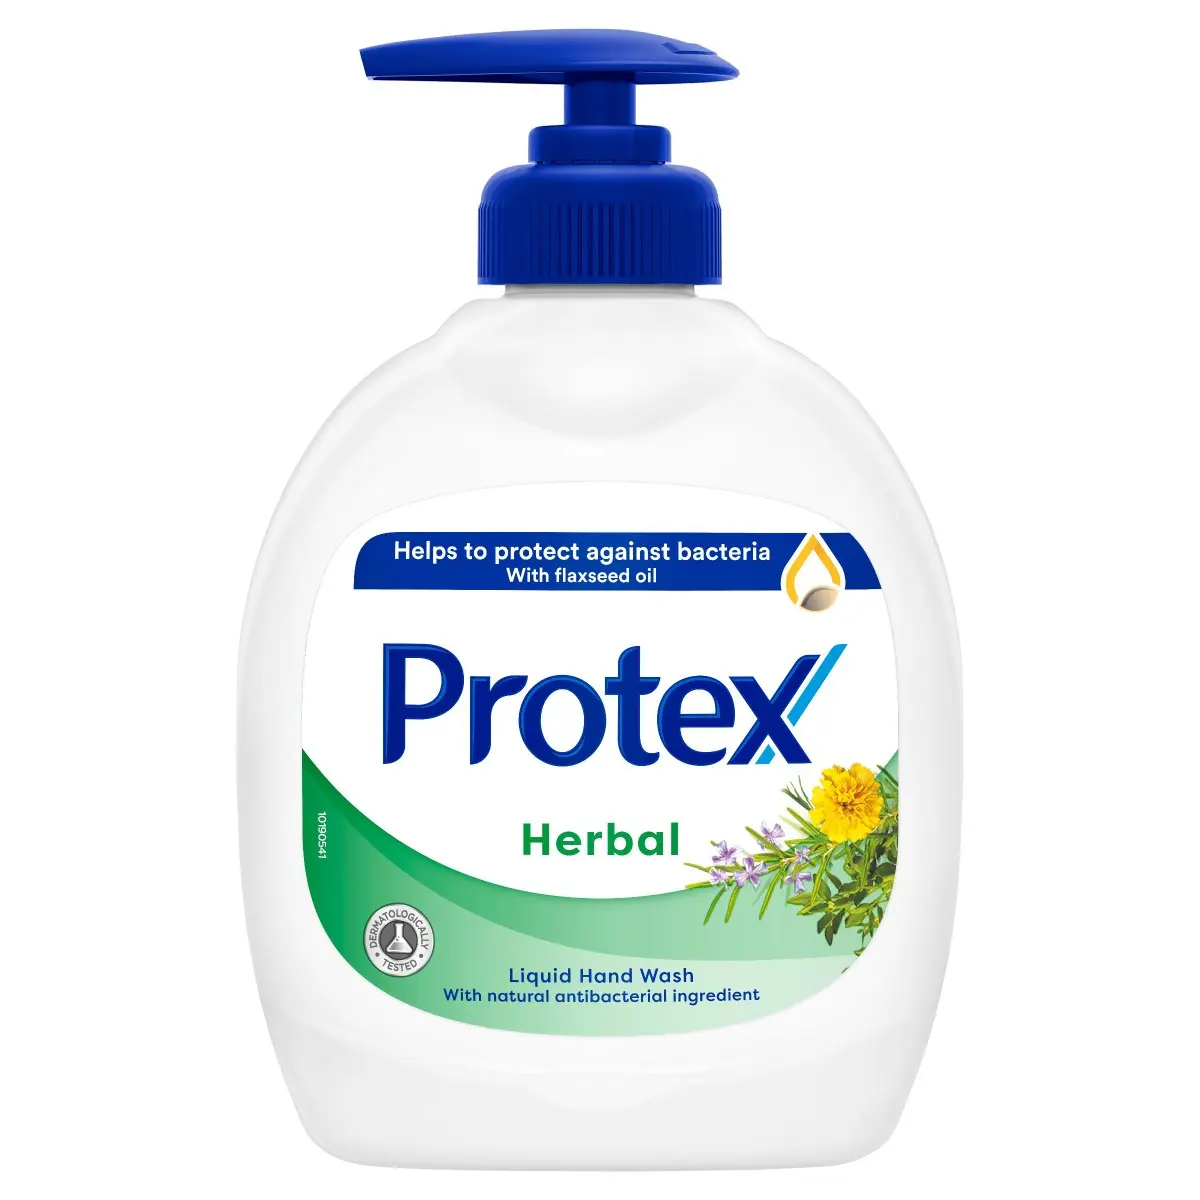 Sapun lichid Protex Herbal 300ml, cu ingredient natural antibacterian